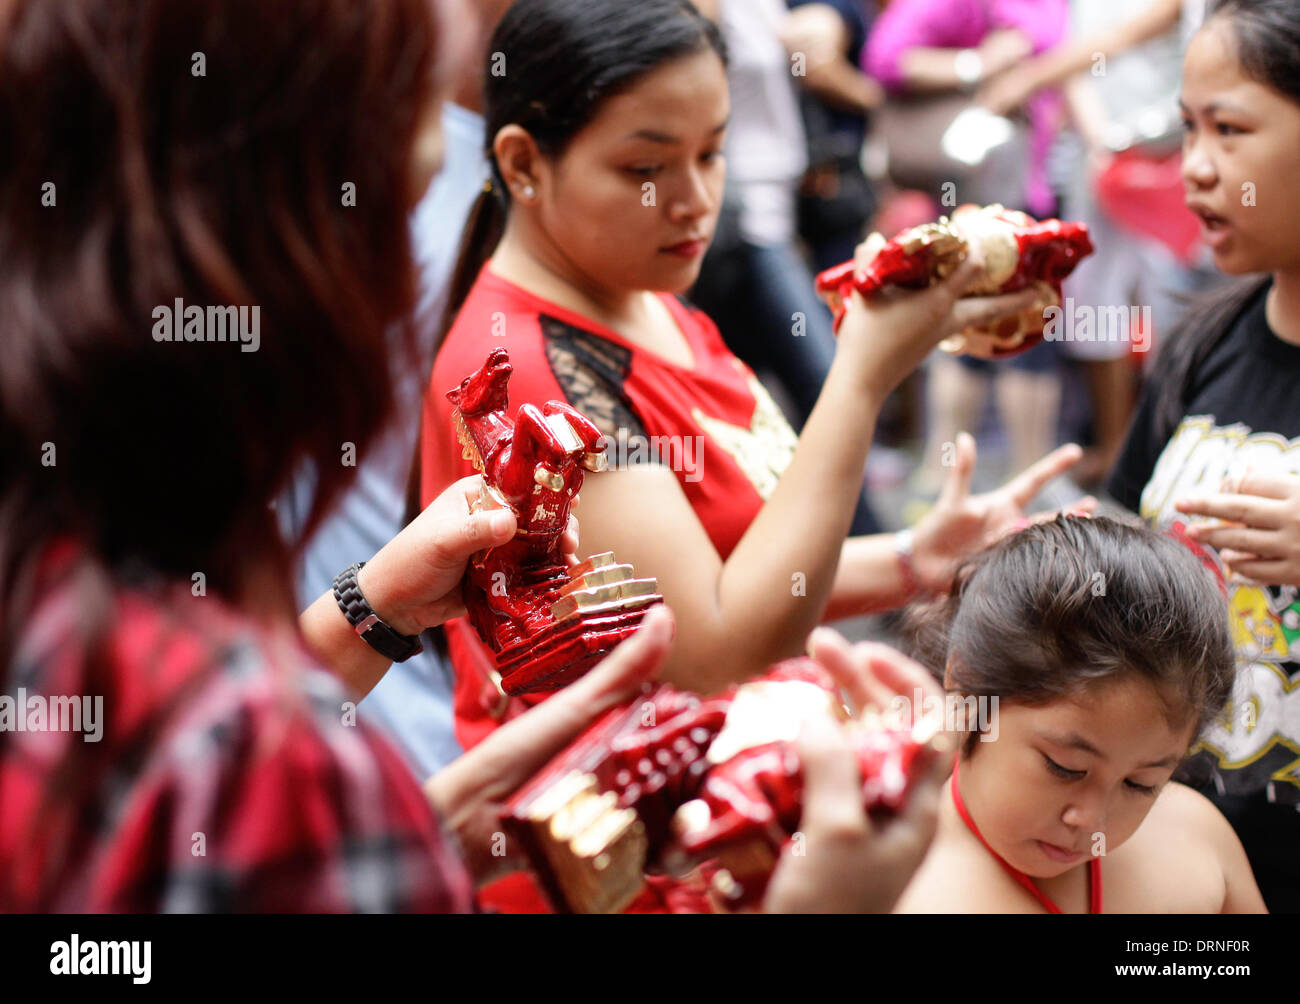 Manila, Filipinas. 30 de enero de 2014. Compradores en Lucky Charms en forma de caballos en Chinatown de Manila, el 30 de enero de 2014, un día antes del año nuevo chino, el Año del Caballo. Fotografía por Mark Cristino/Alamy Live News Foto de stock